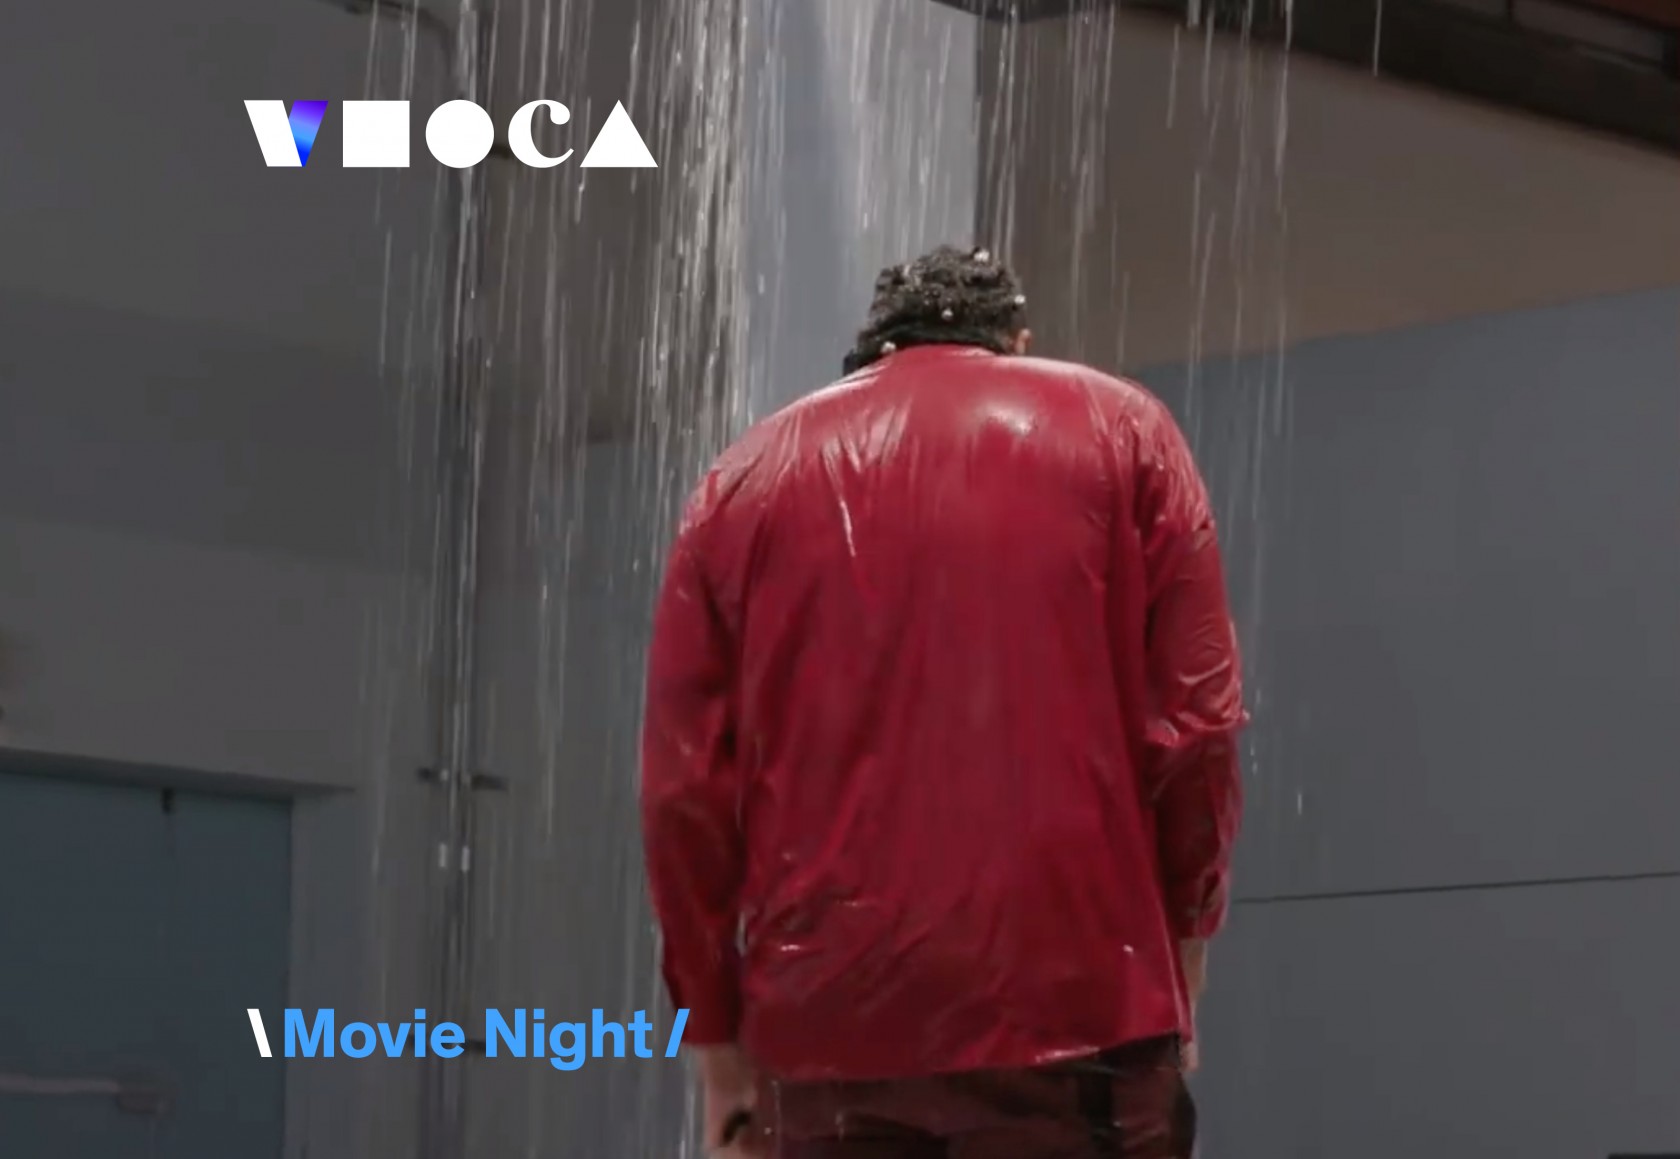 Virtual MOCA: Movie Night